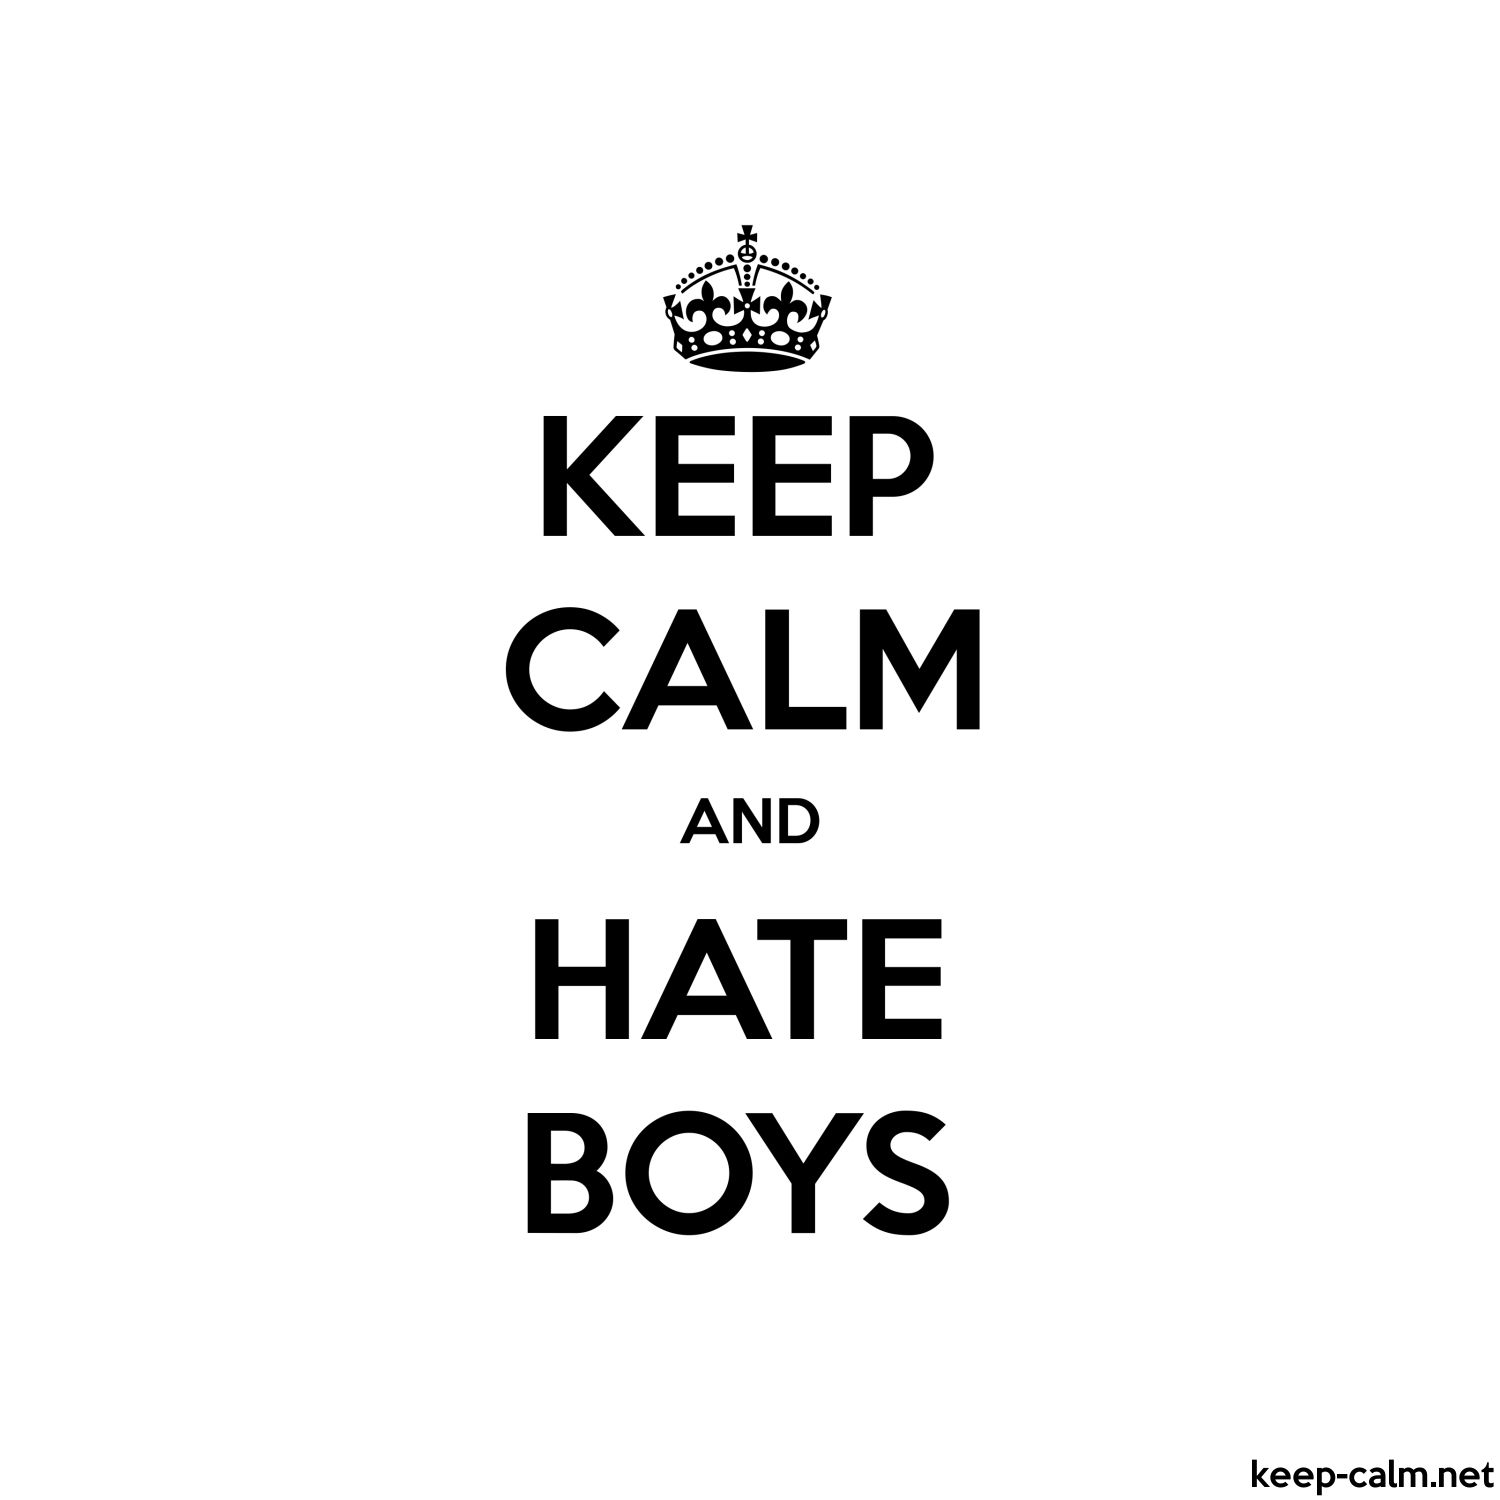 KEEP CALM AND HATE BOYS